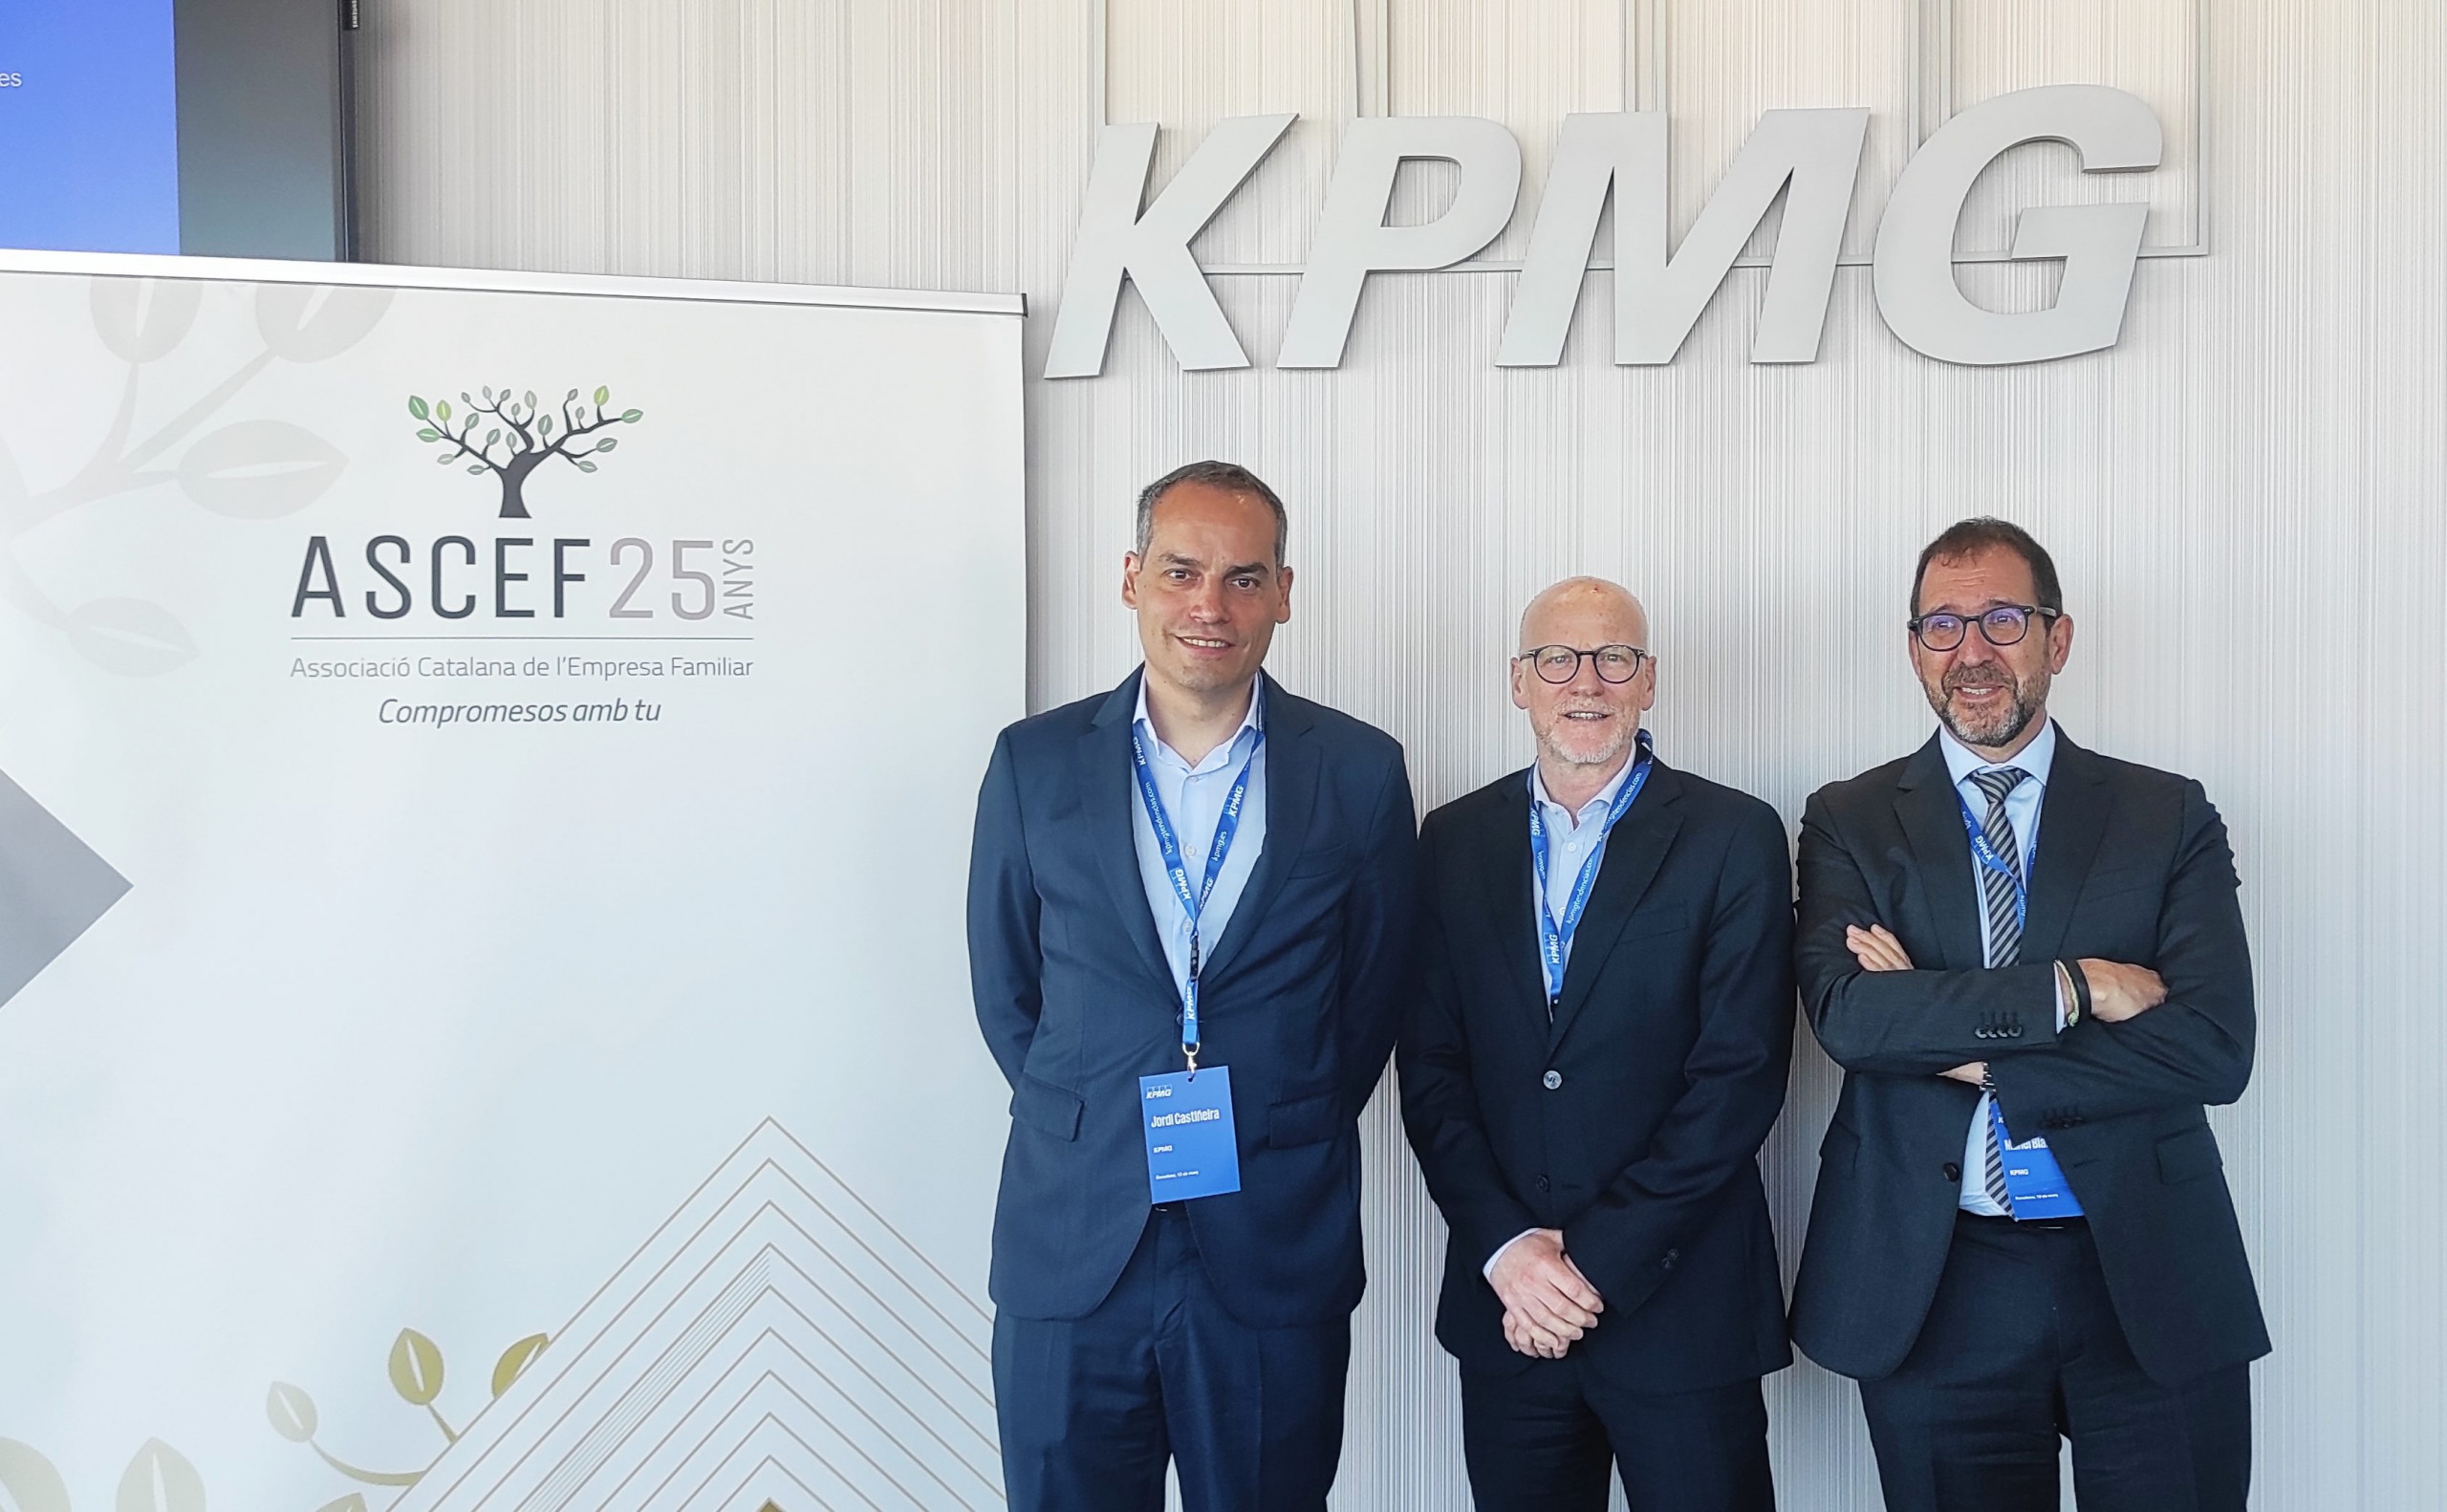 Sessió ASCEF i KPMG sobre finançament de l’empresa familiar